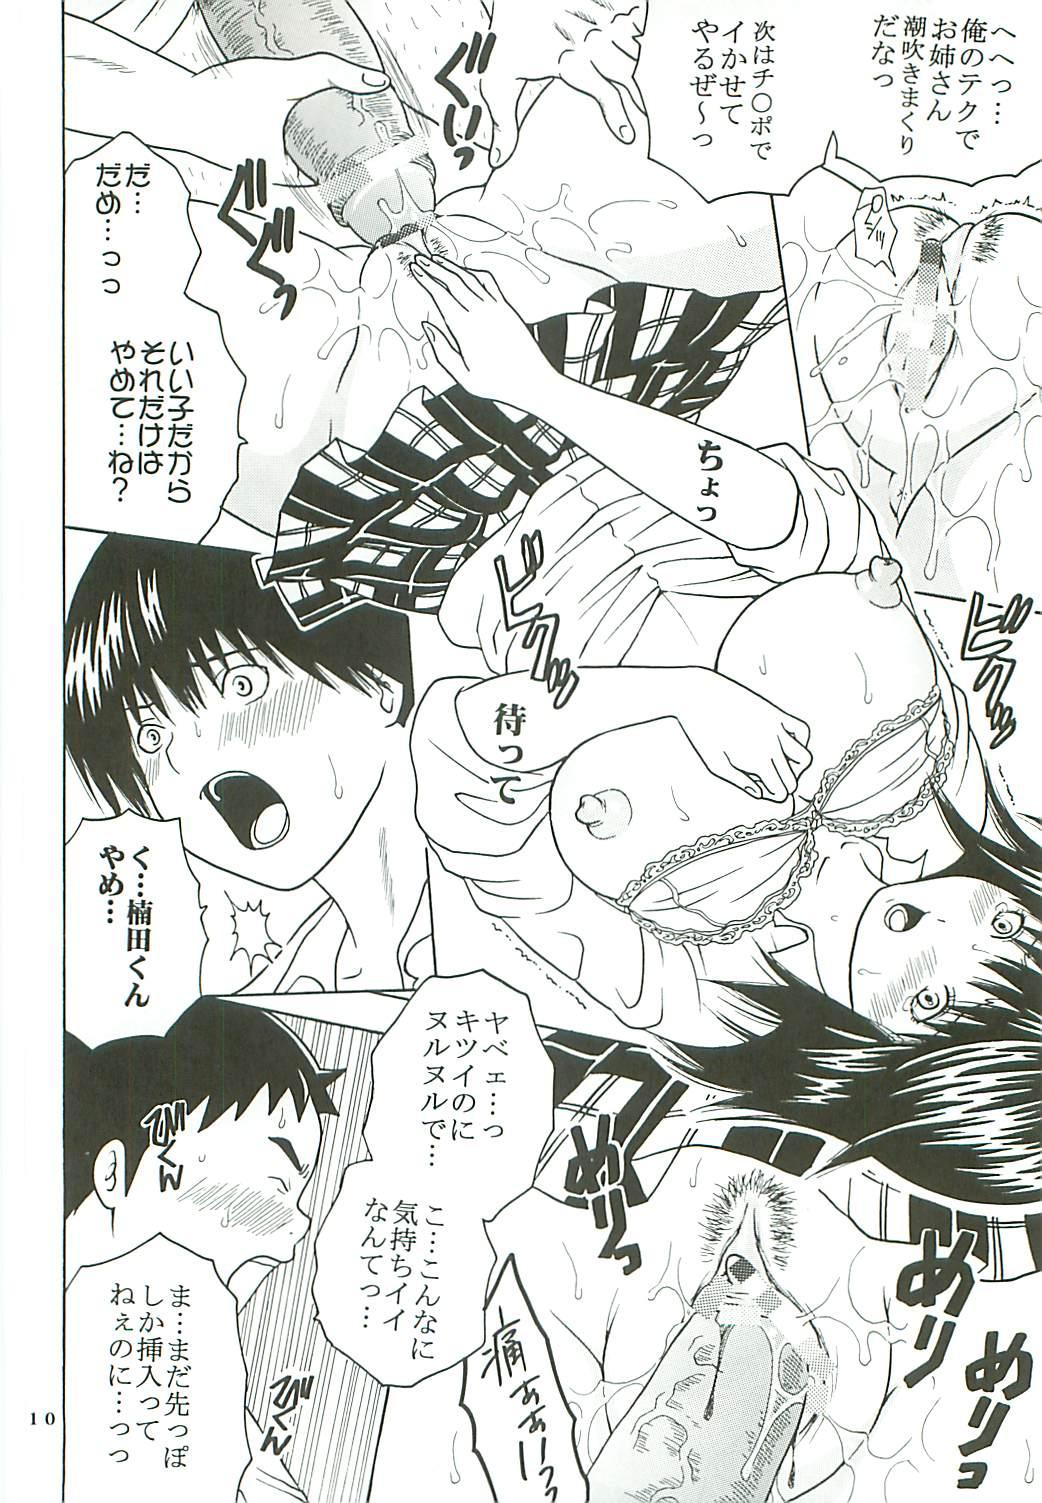 Young Tits Chitsui Gentei Nakadashi Limited vol.3 - Hatsukoi limited Ninfeta - Page 11